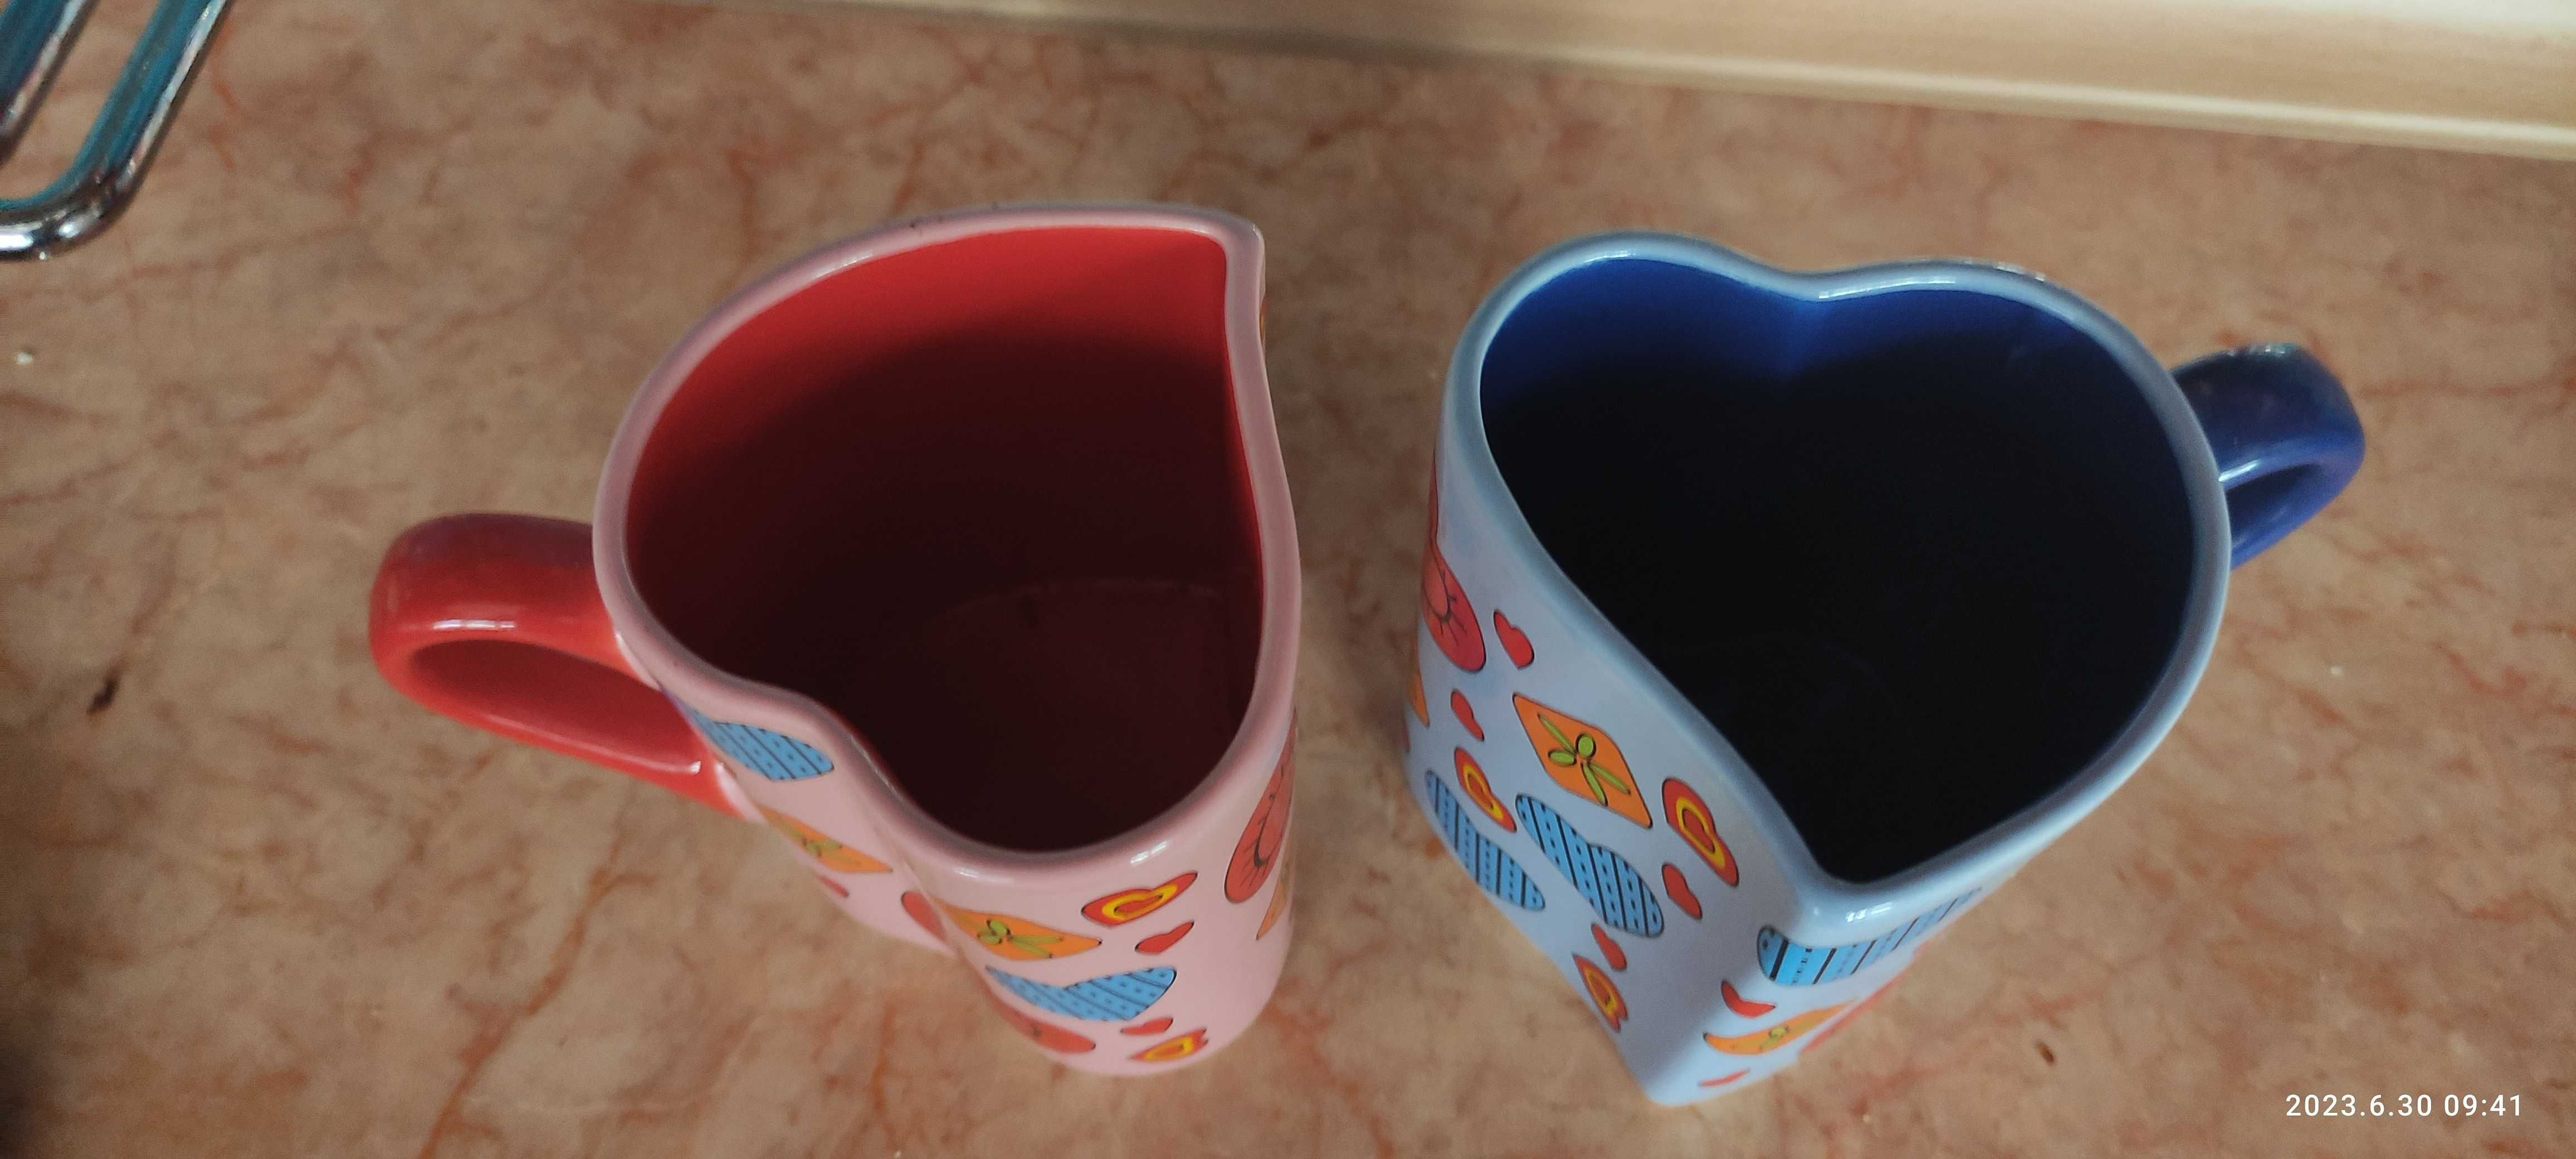 Оригинальные парные чашки для влюбленных в виде сердечек